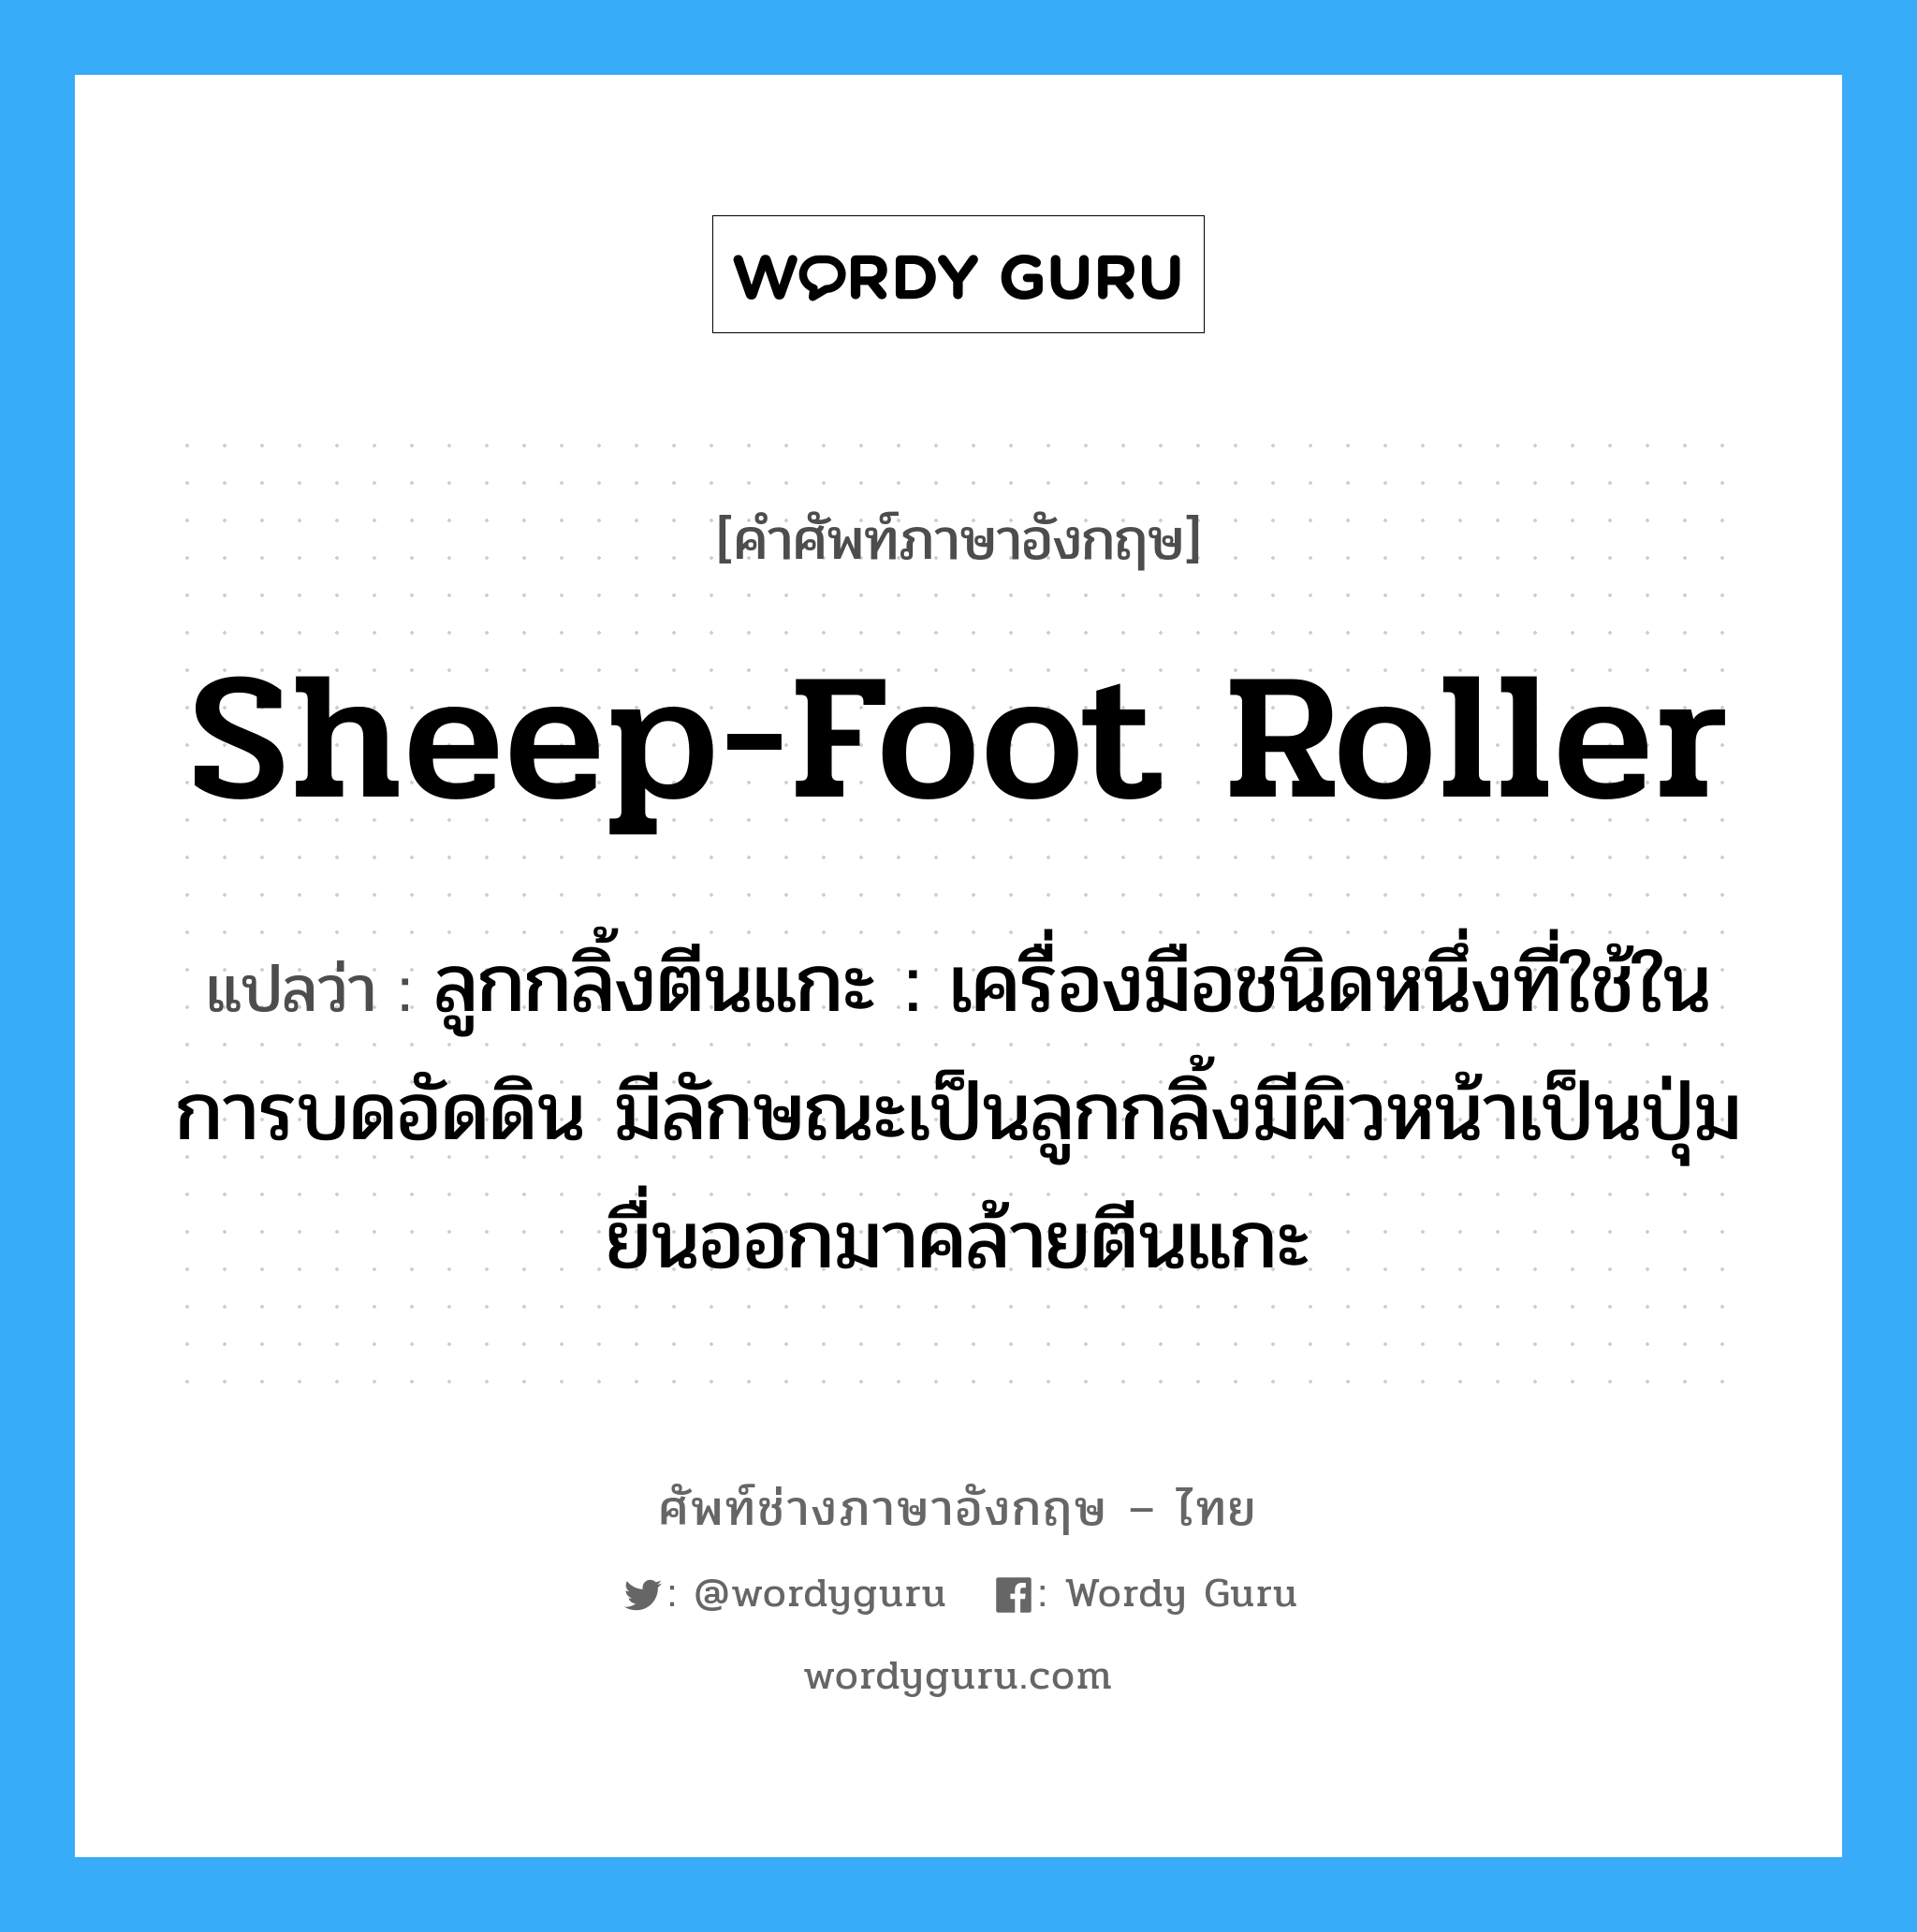 sheep-foot roller แปลว่า?, คำศัพท์ช่างภาษาอังกฤษ - ไทย sheep-foot roller คำศัพท์ภาษาอังกฤษ sheep-foot roller แปลว่า ลูกกลิ้งตีนแกะ : เครื่องมือชนิดหนึ่งที่ใช้ในการบดอัดดิน มีลักษณะเป็นลูกกลิ้งมีผิวหน้าเป็นปุ่มยื่นออกมาคล้ายตีนแกะ